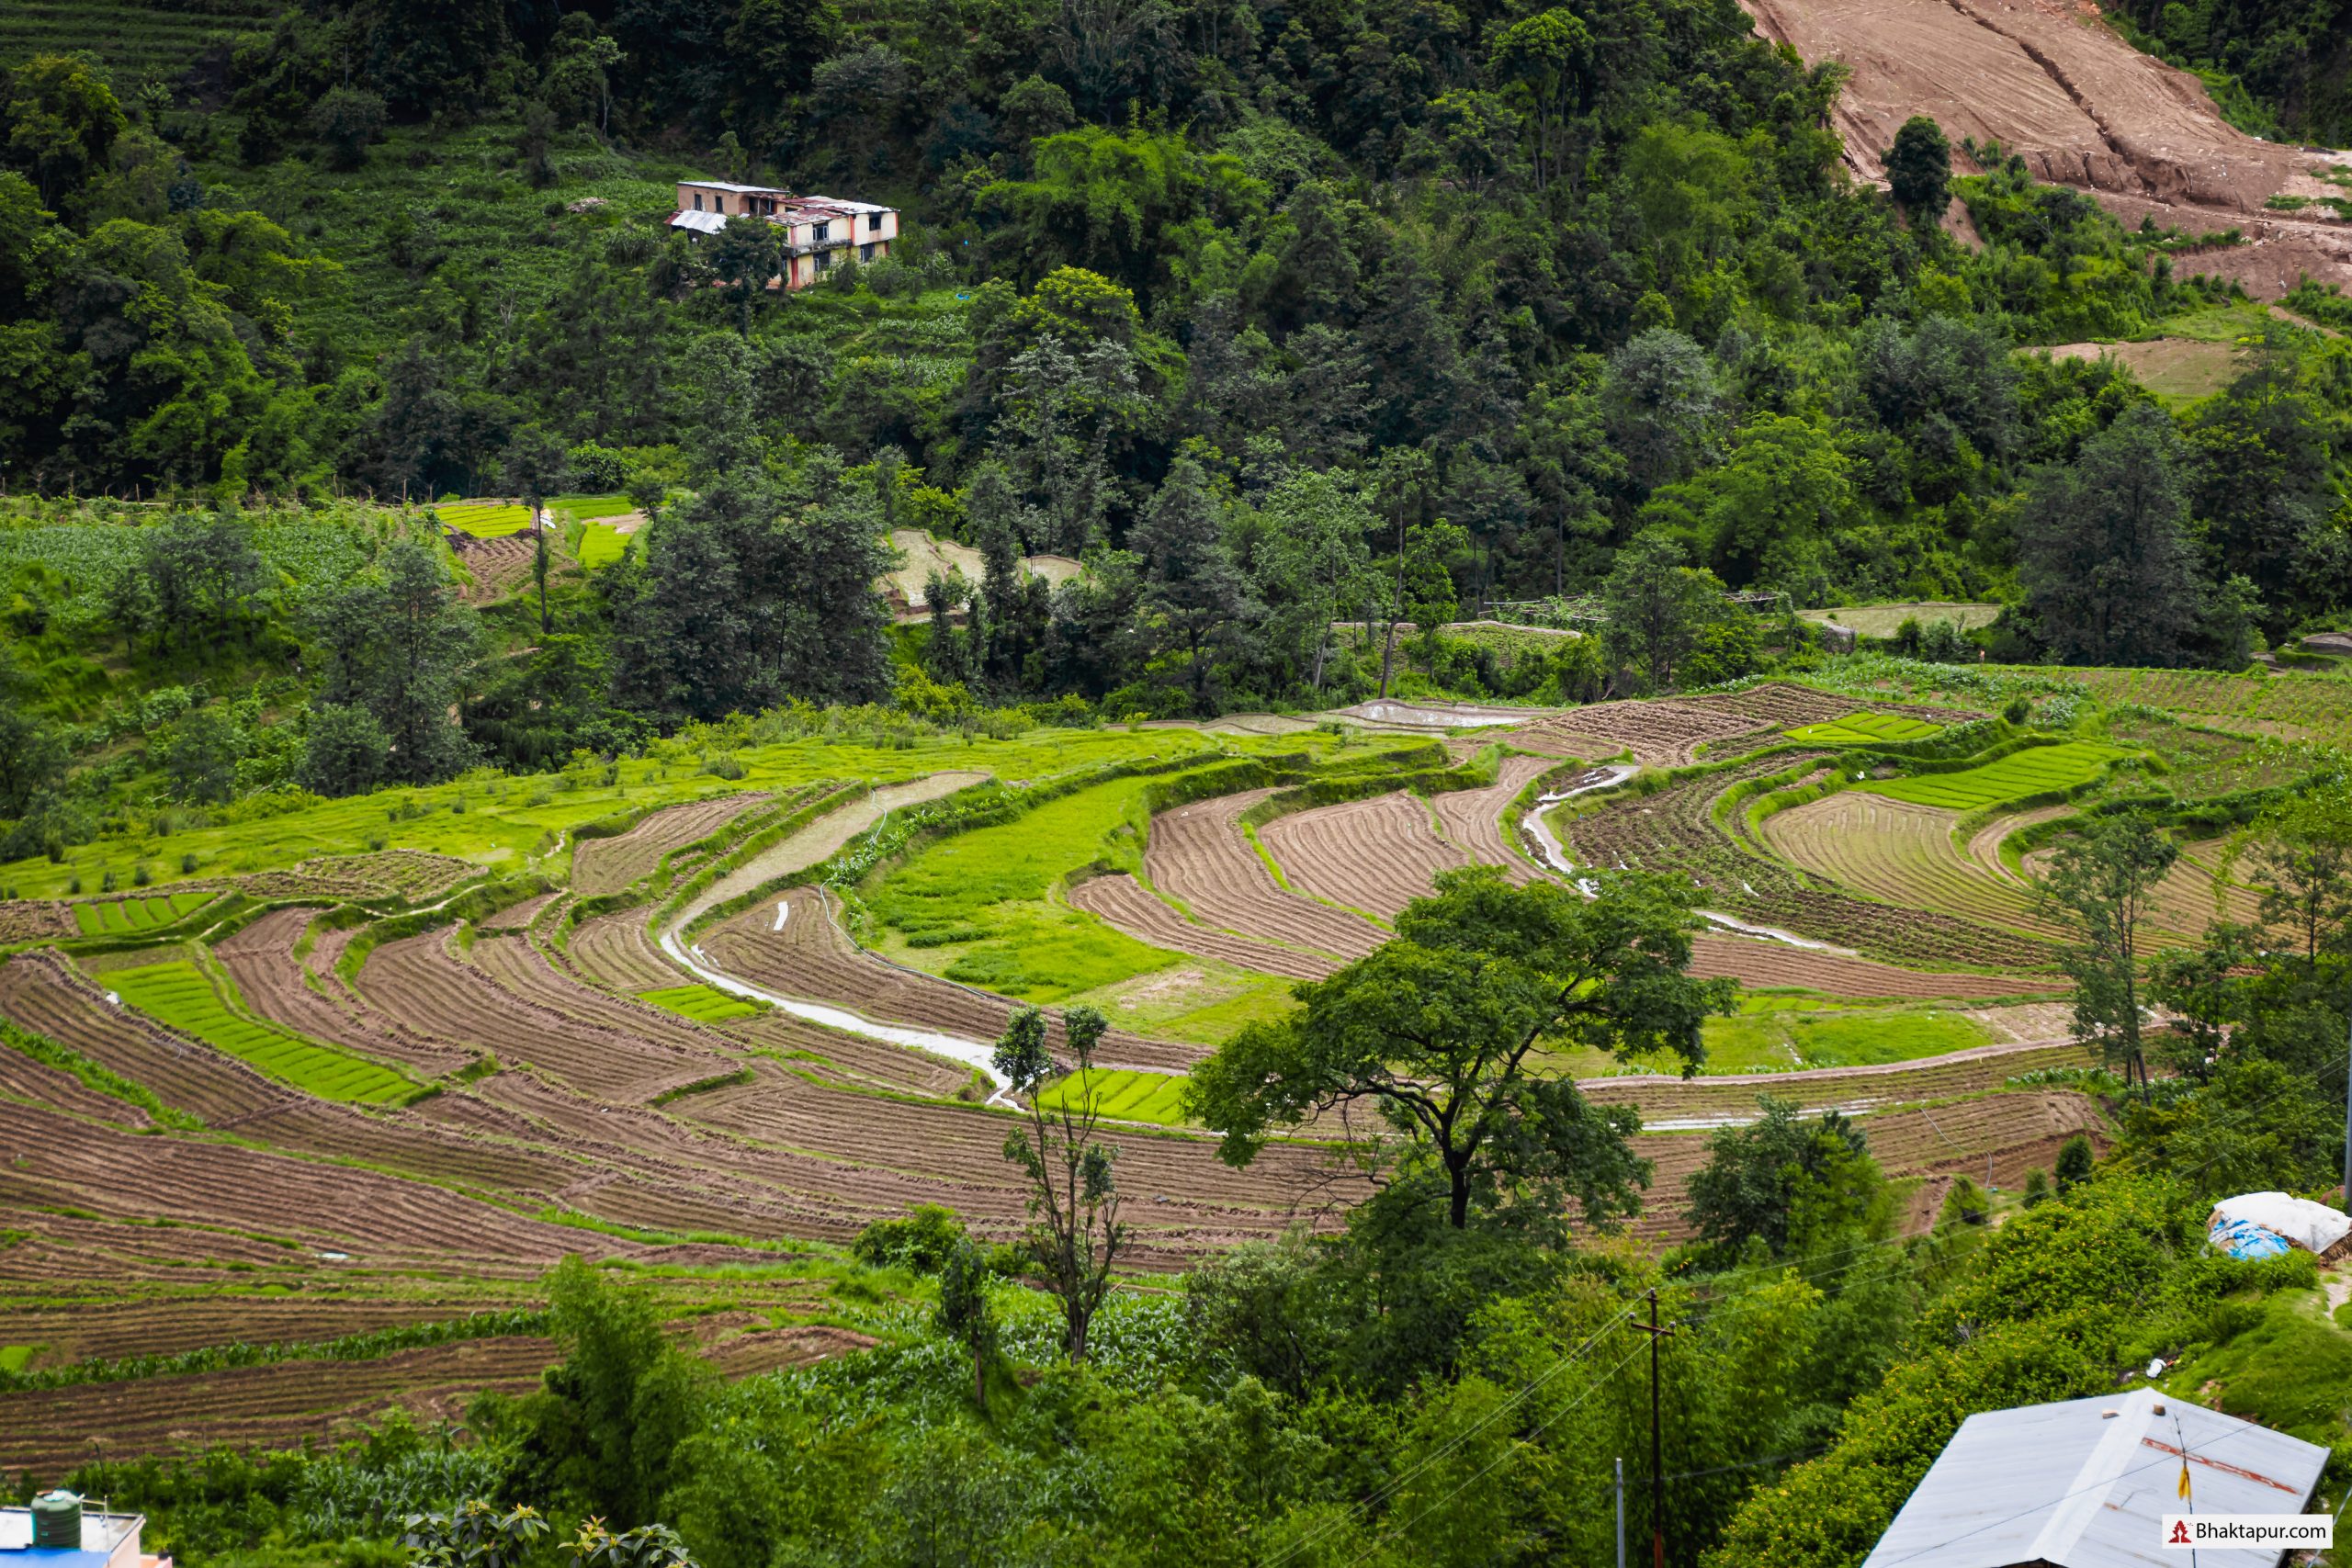 Terrace farming at bhaktapur image